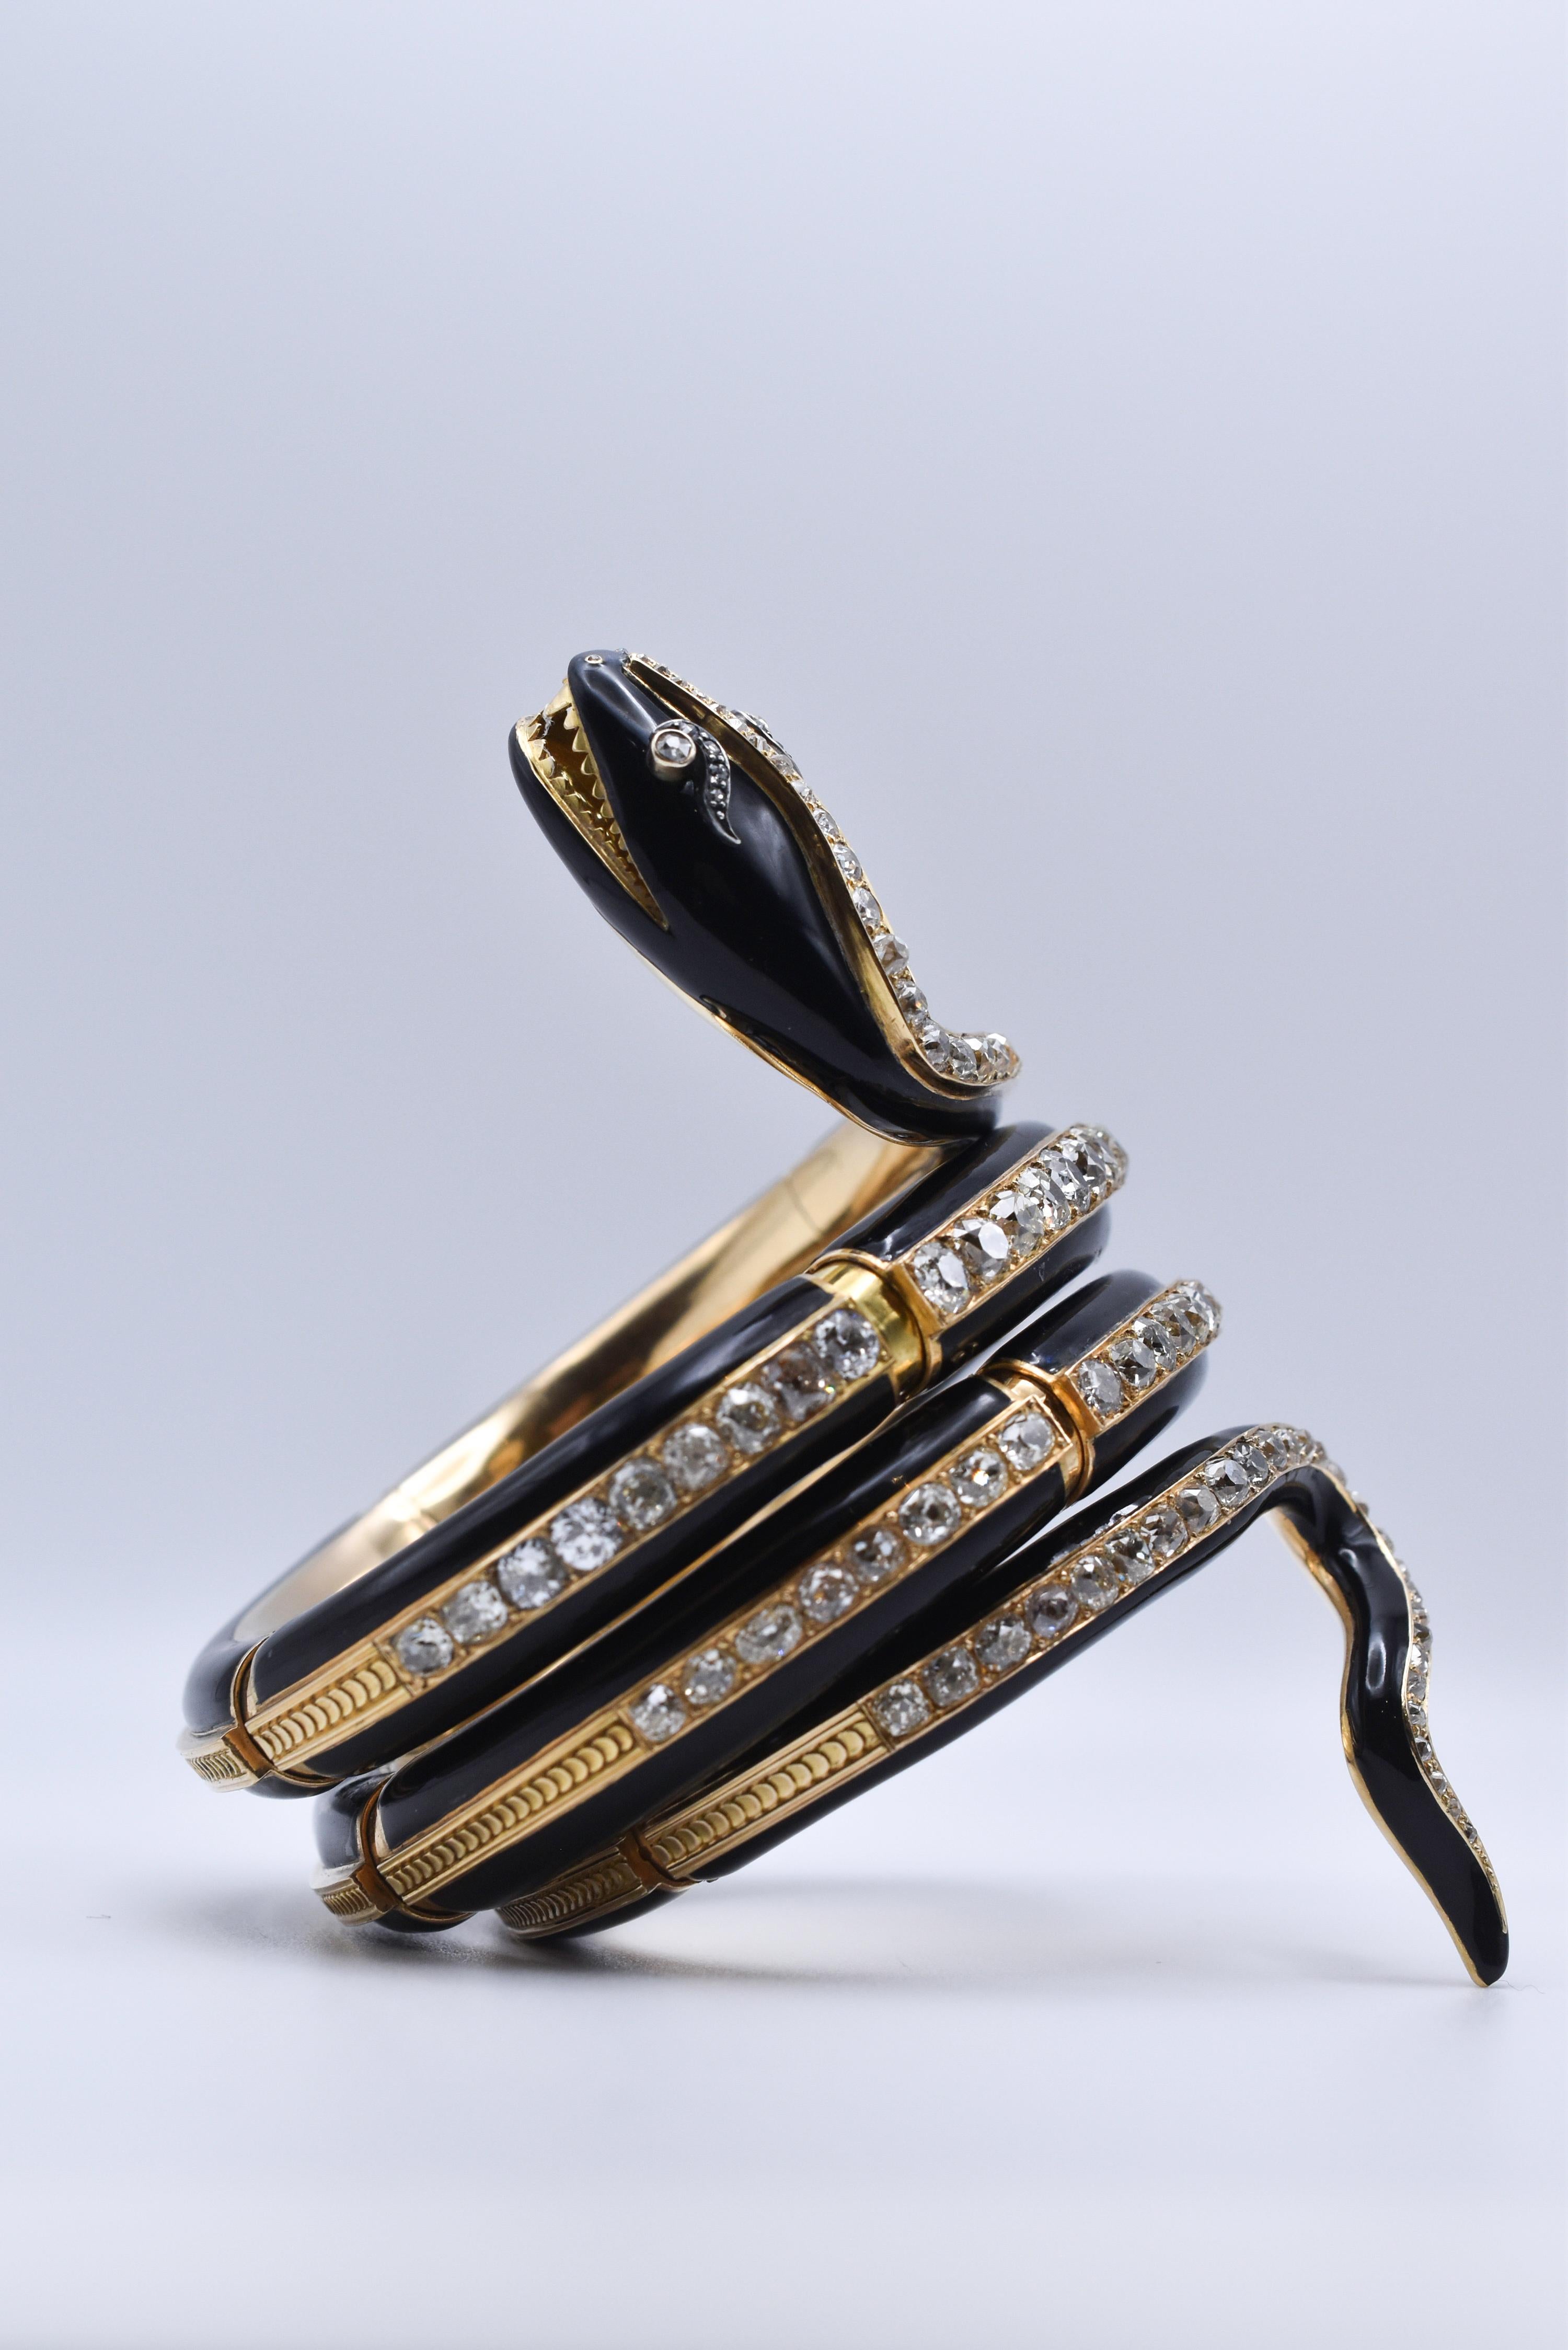 Ein feines antikes Schlangenarmband aus der viktorianischen Ära, gefertigt aus 18 Karat Gelbgold mit schwarzem Emaille-Design, mit 28 Karat Diamanten im Minenschliff. Hergestellt in Italien, um 1880.
